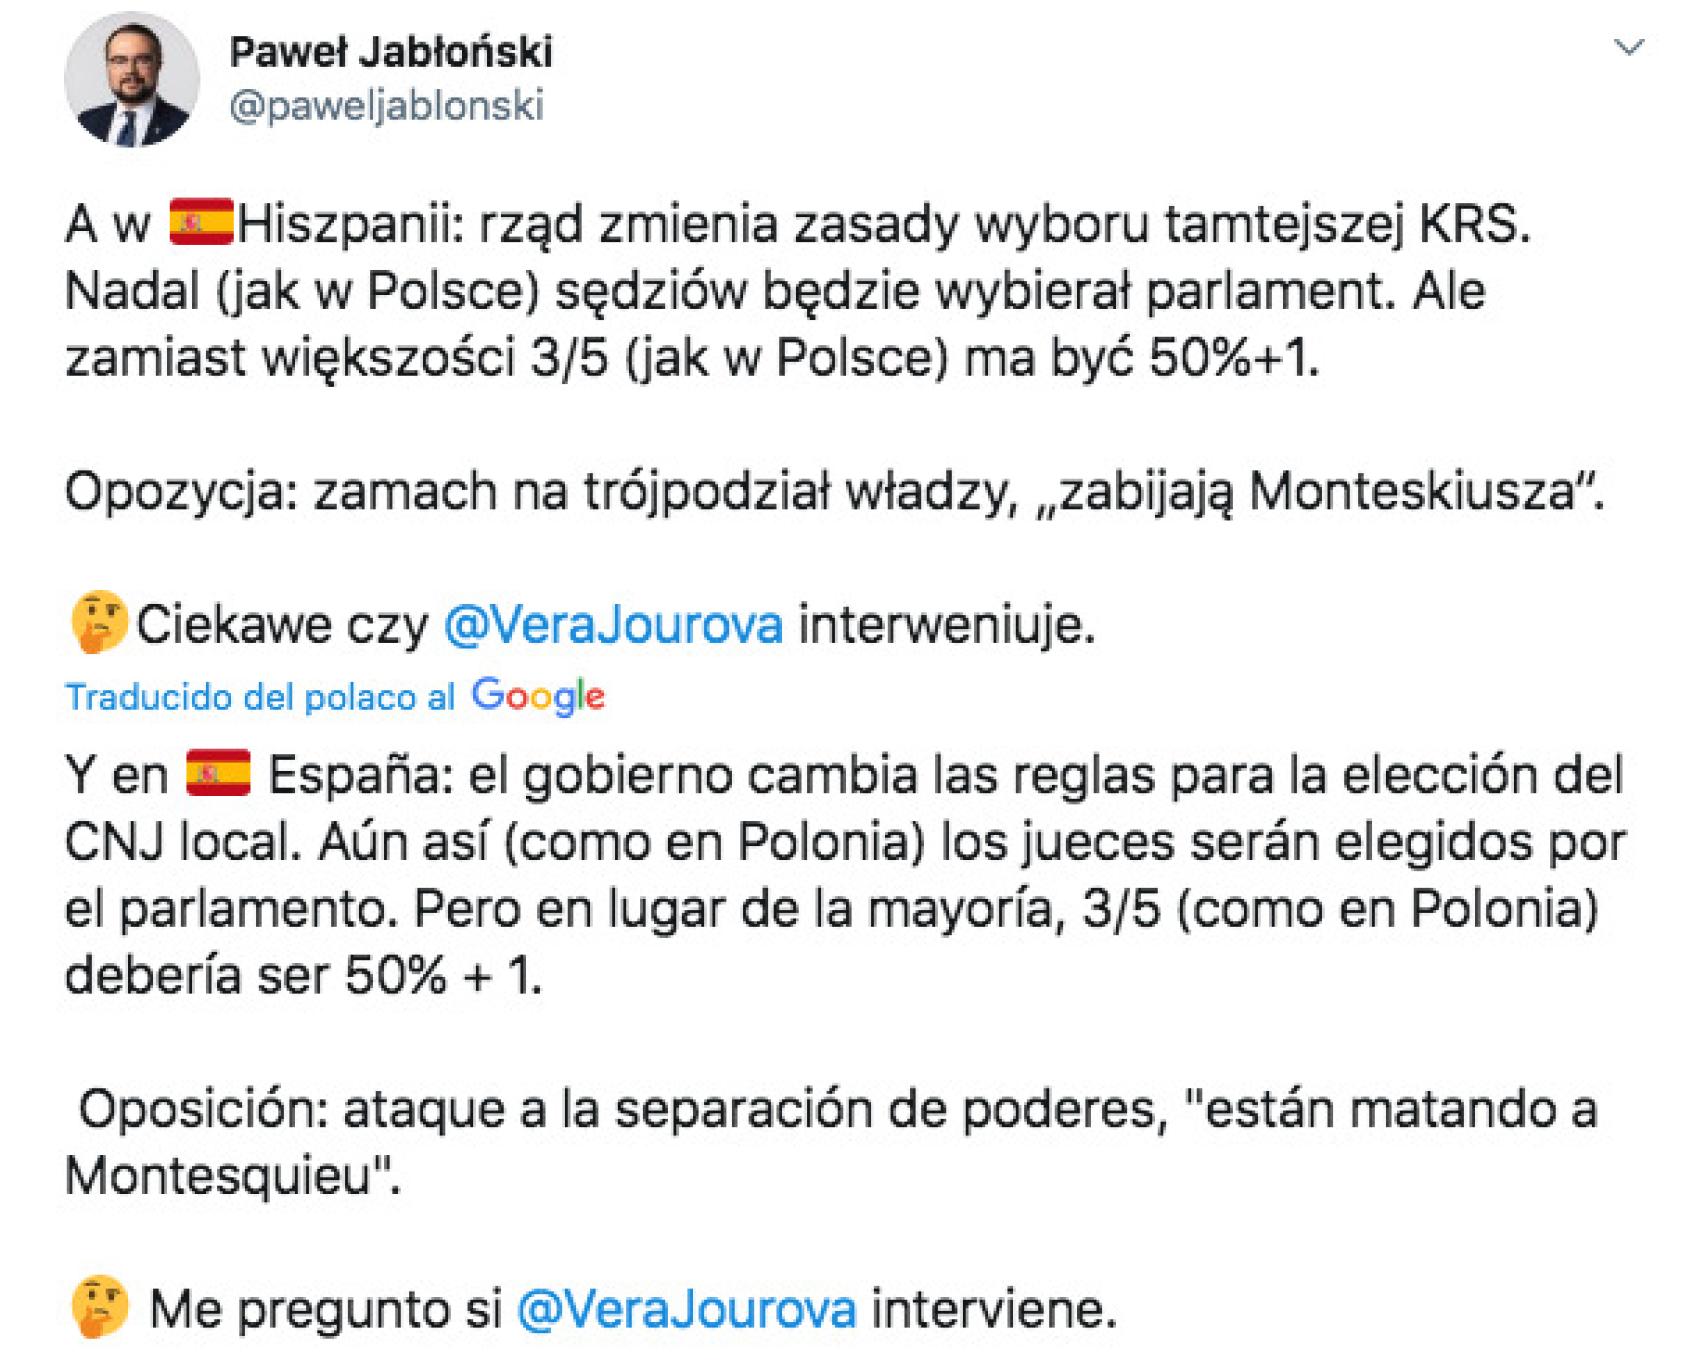 Tuit difundido por el 'número dos' de Exteriores polaco, Pawel Jablonski.